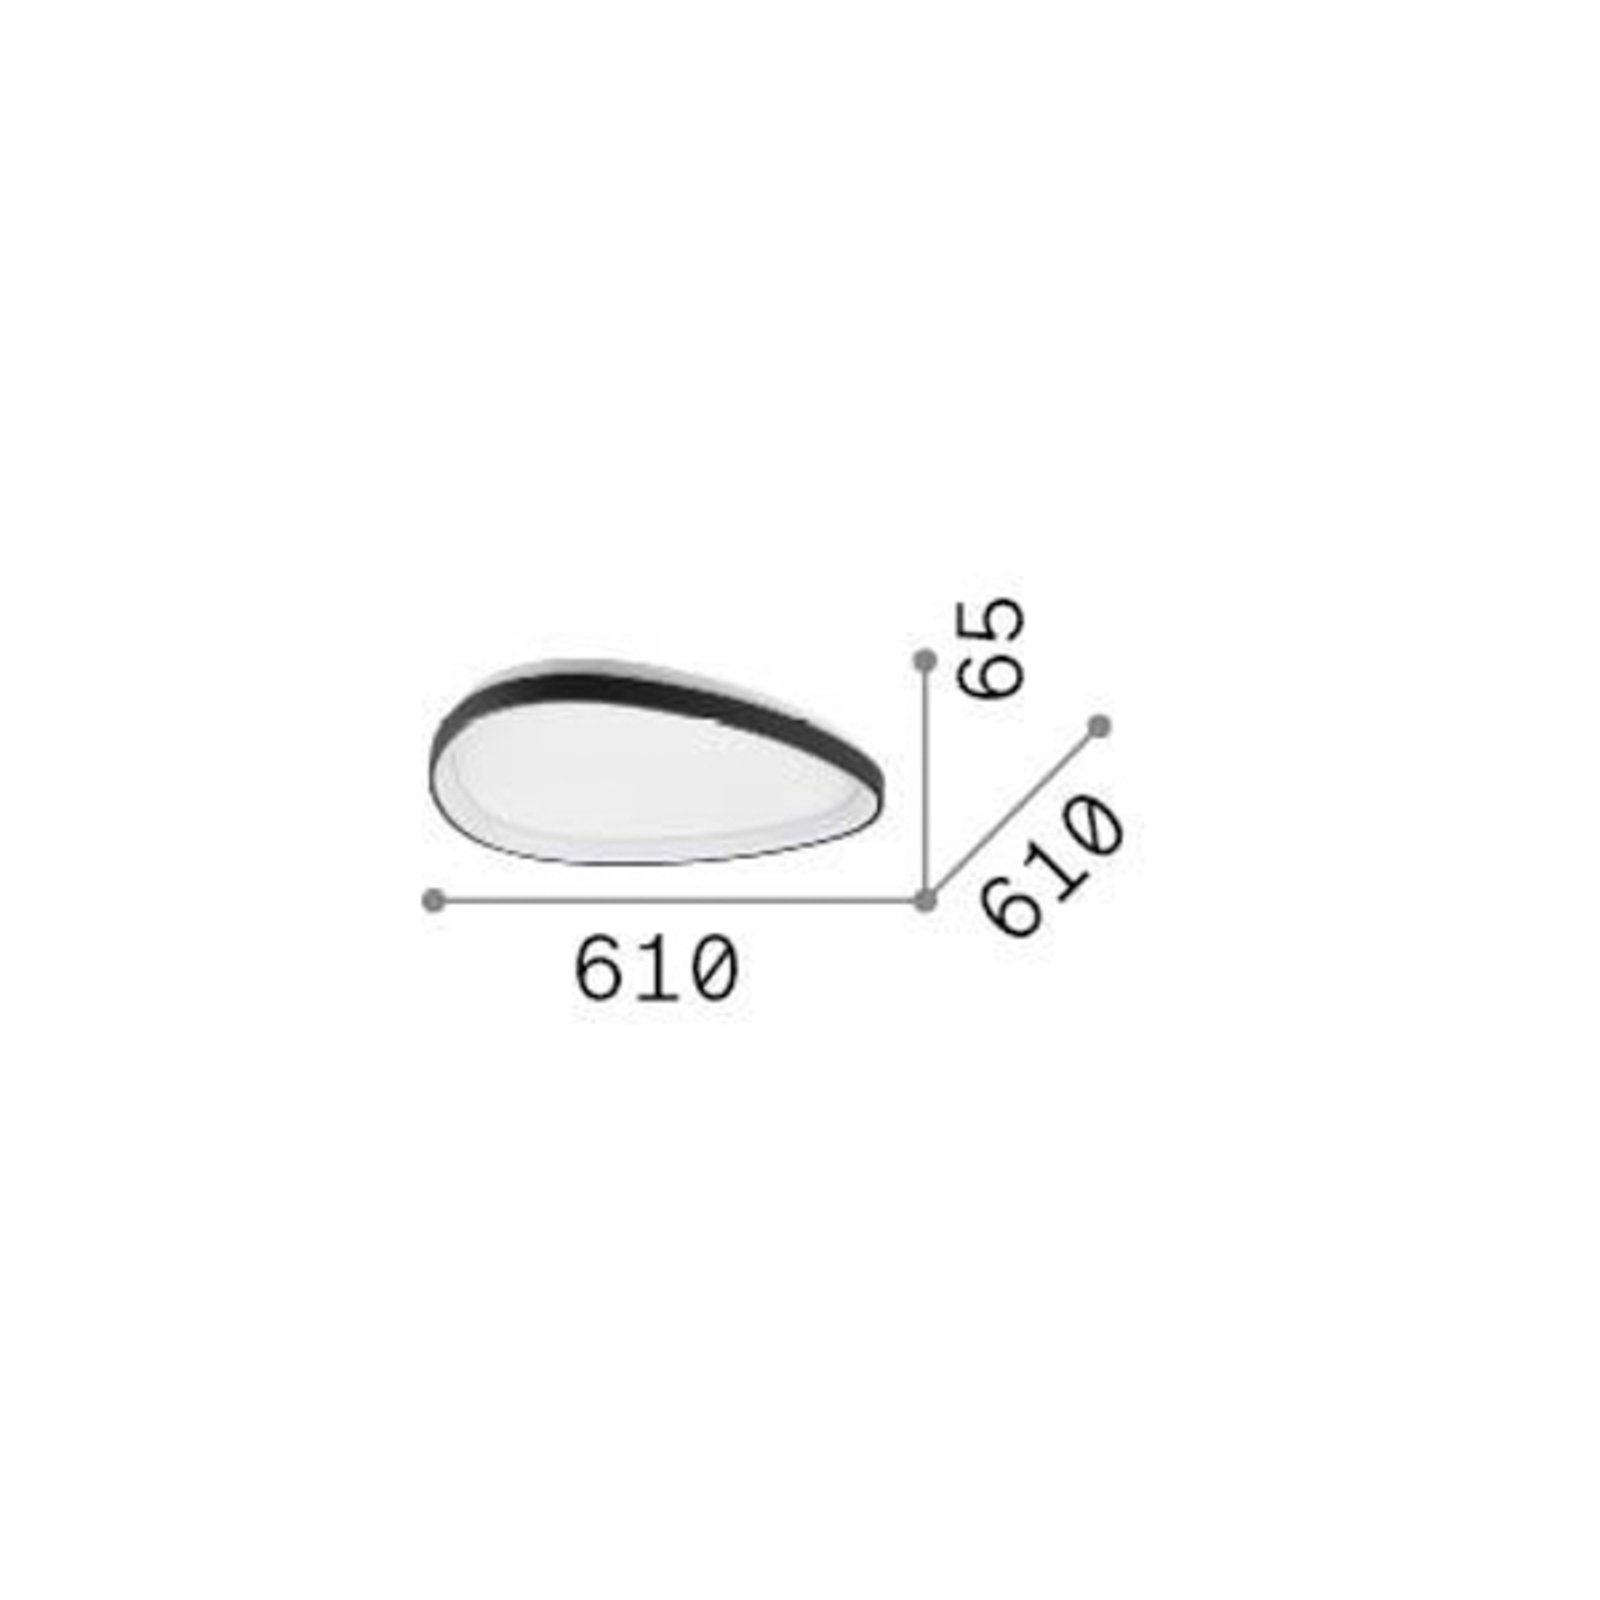 Ideal Lux LED-Deckenleuchte Gemini, weiß, 61 cm, on/off